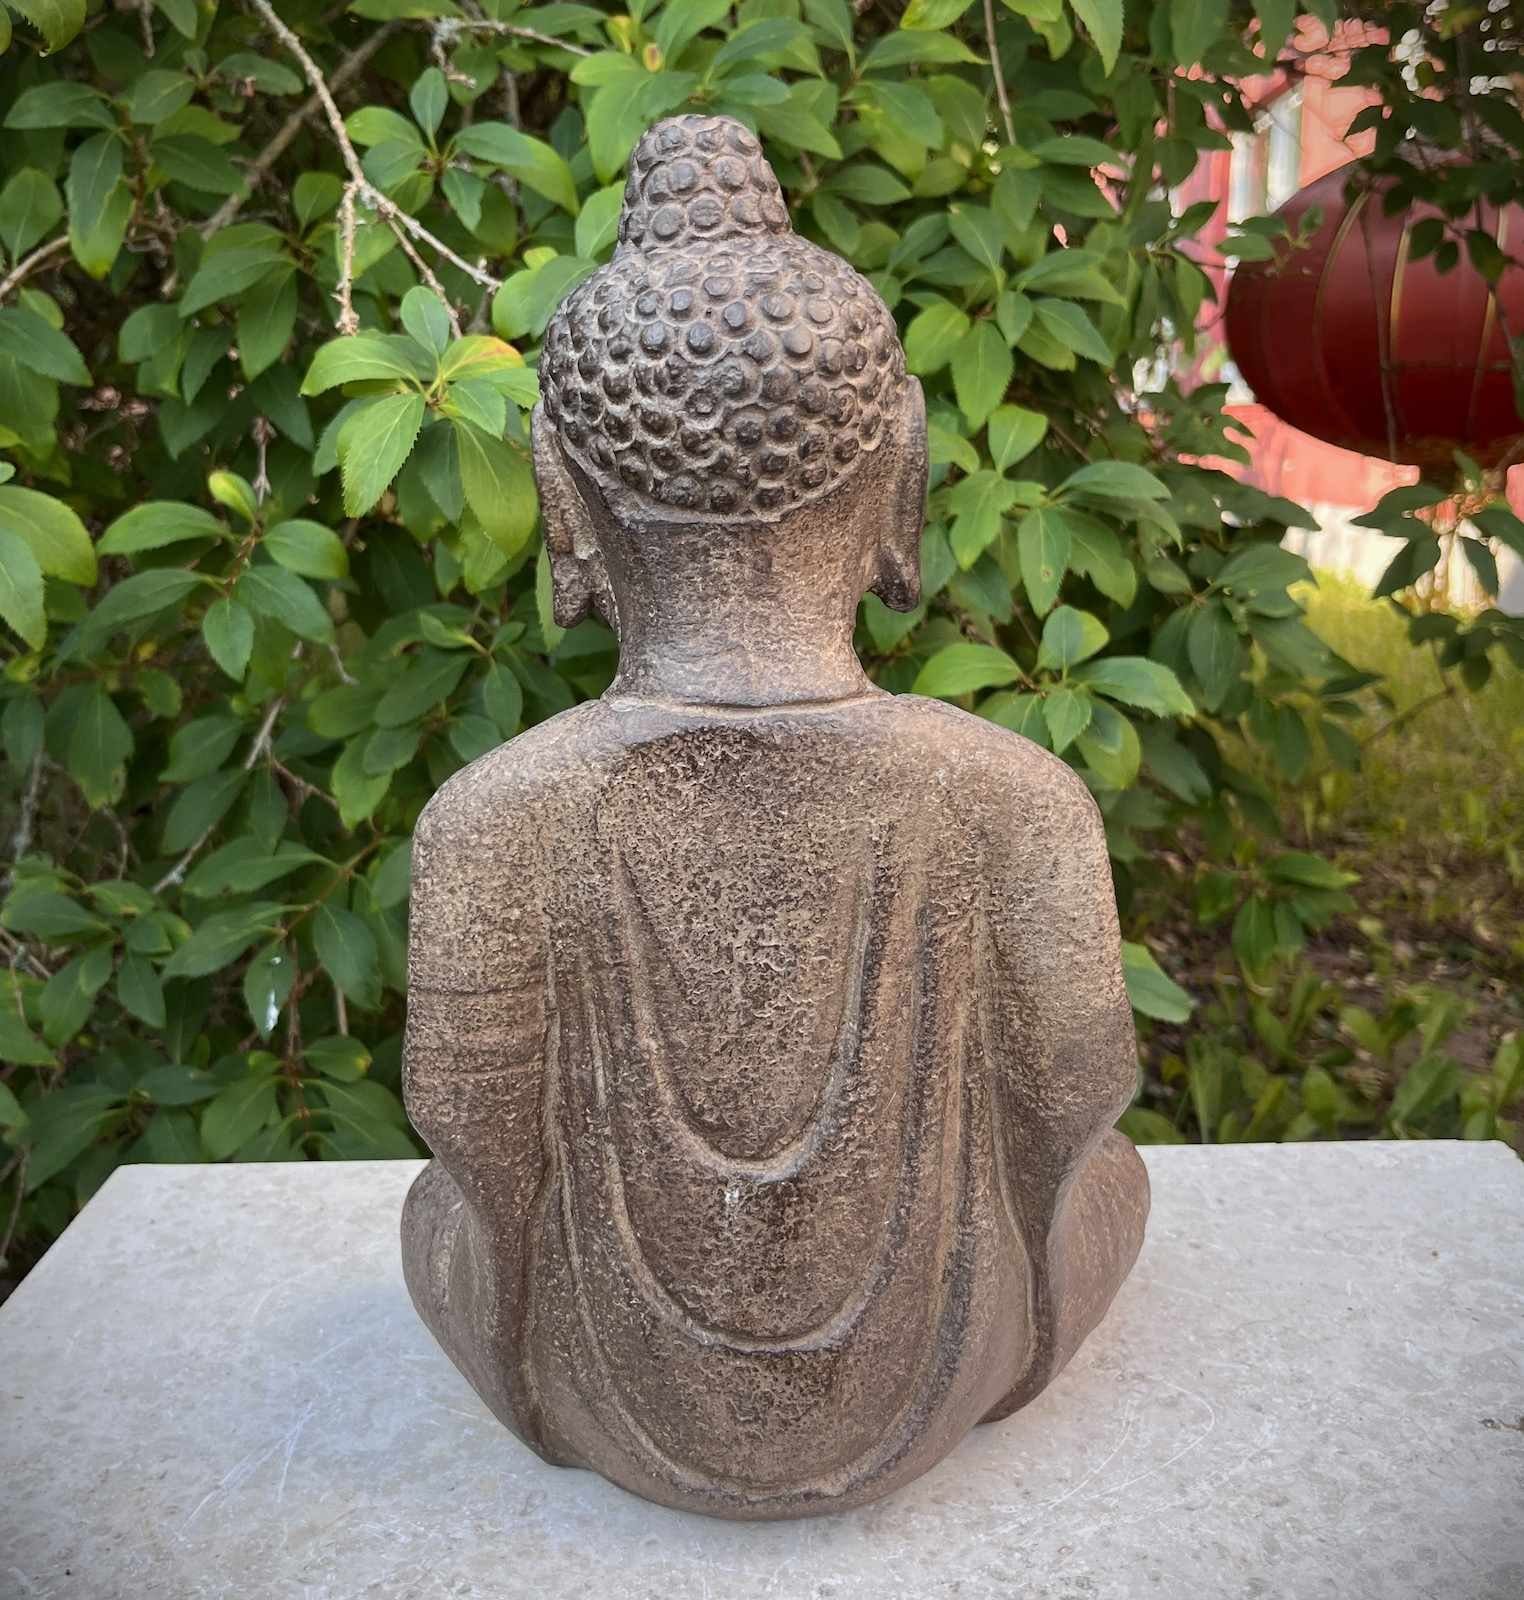 Gartenfigur Meditation China Tibet Figur Buddha Stein LifeStyle Asien Garten Naturstein